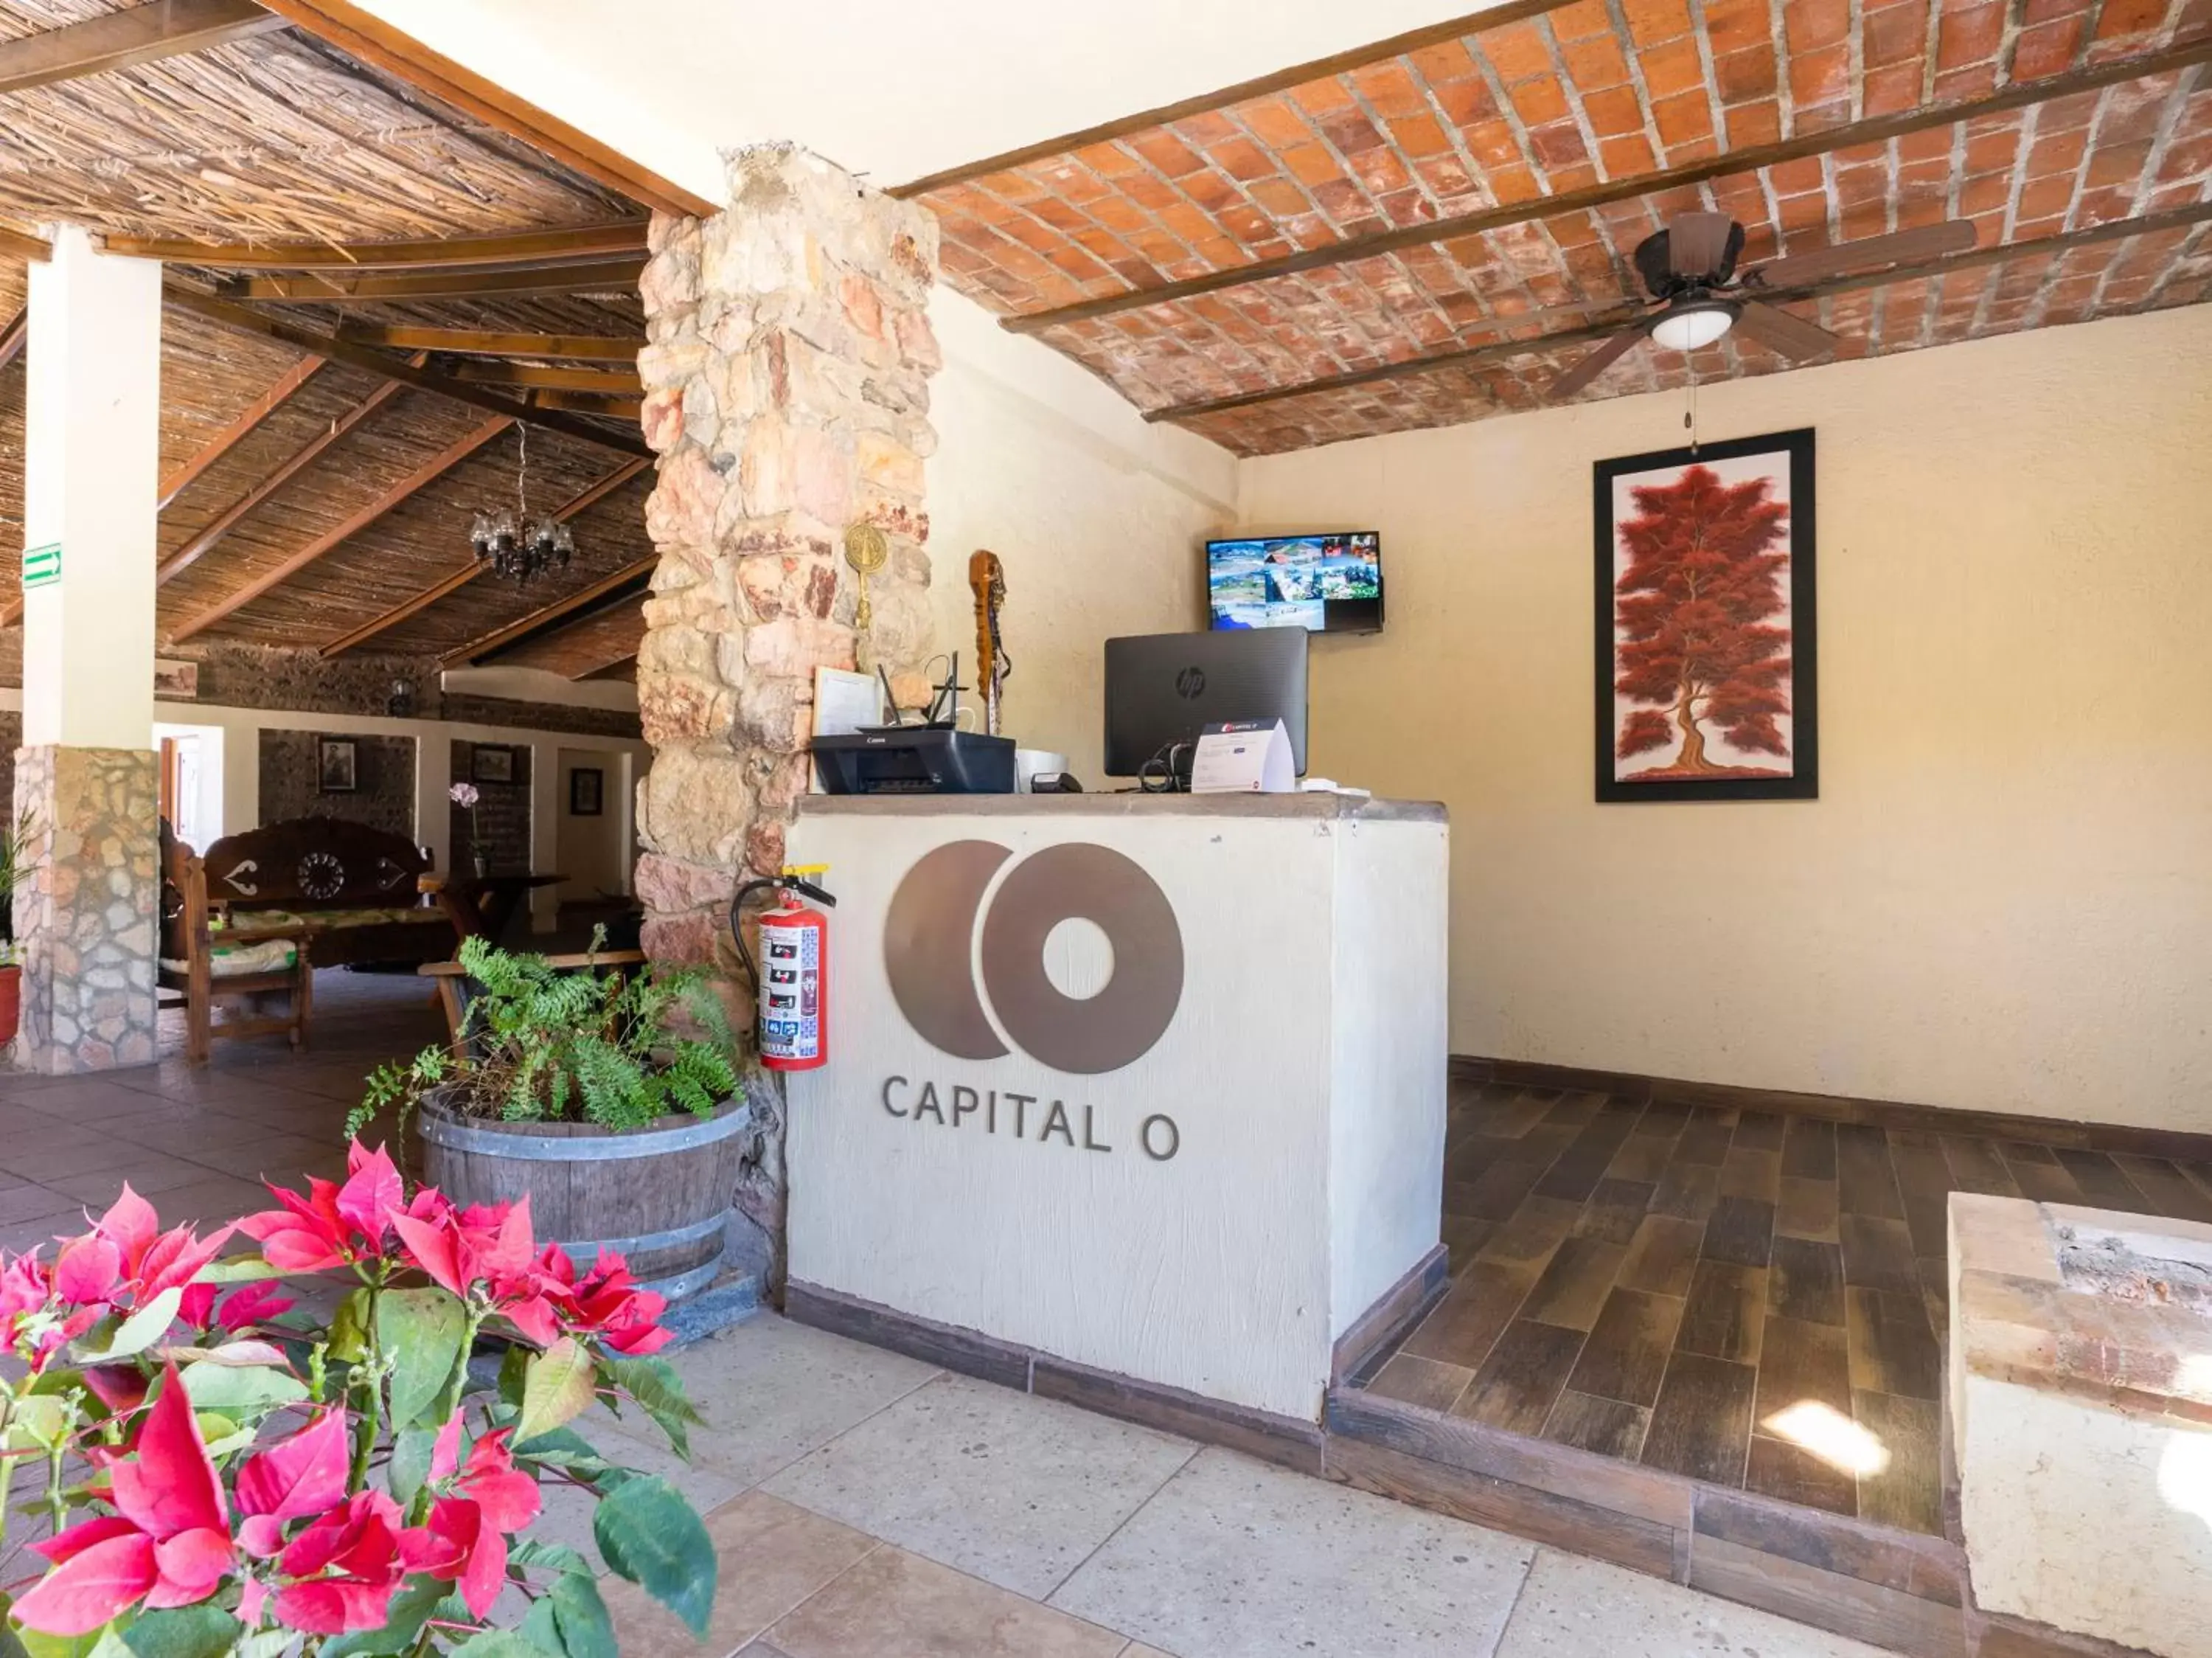 Lobby or reception, Lobby/Reception in Capital O Hotel Posada Terraza, Tequila Jalisco